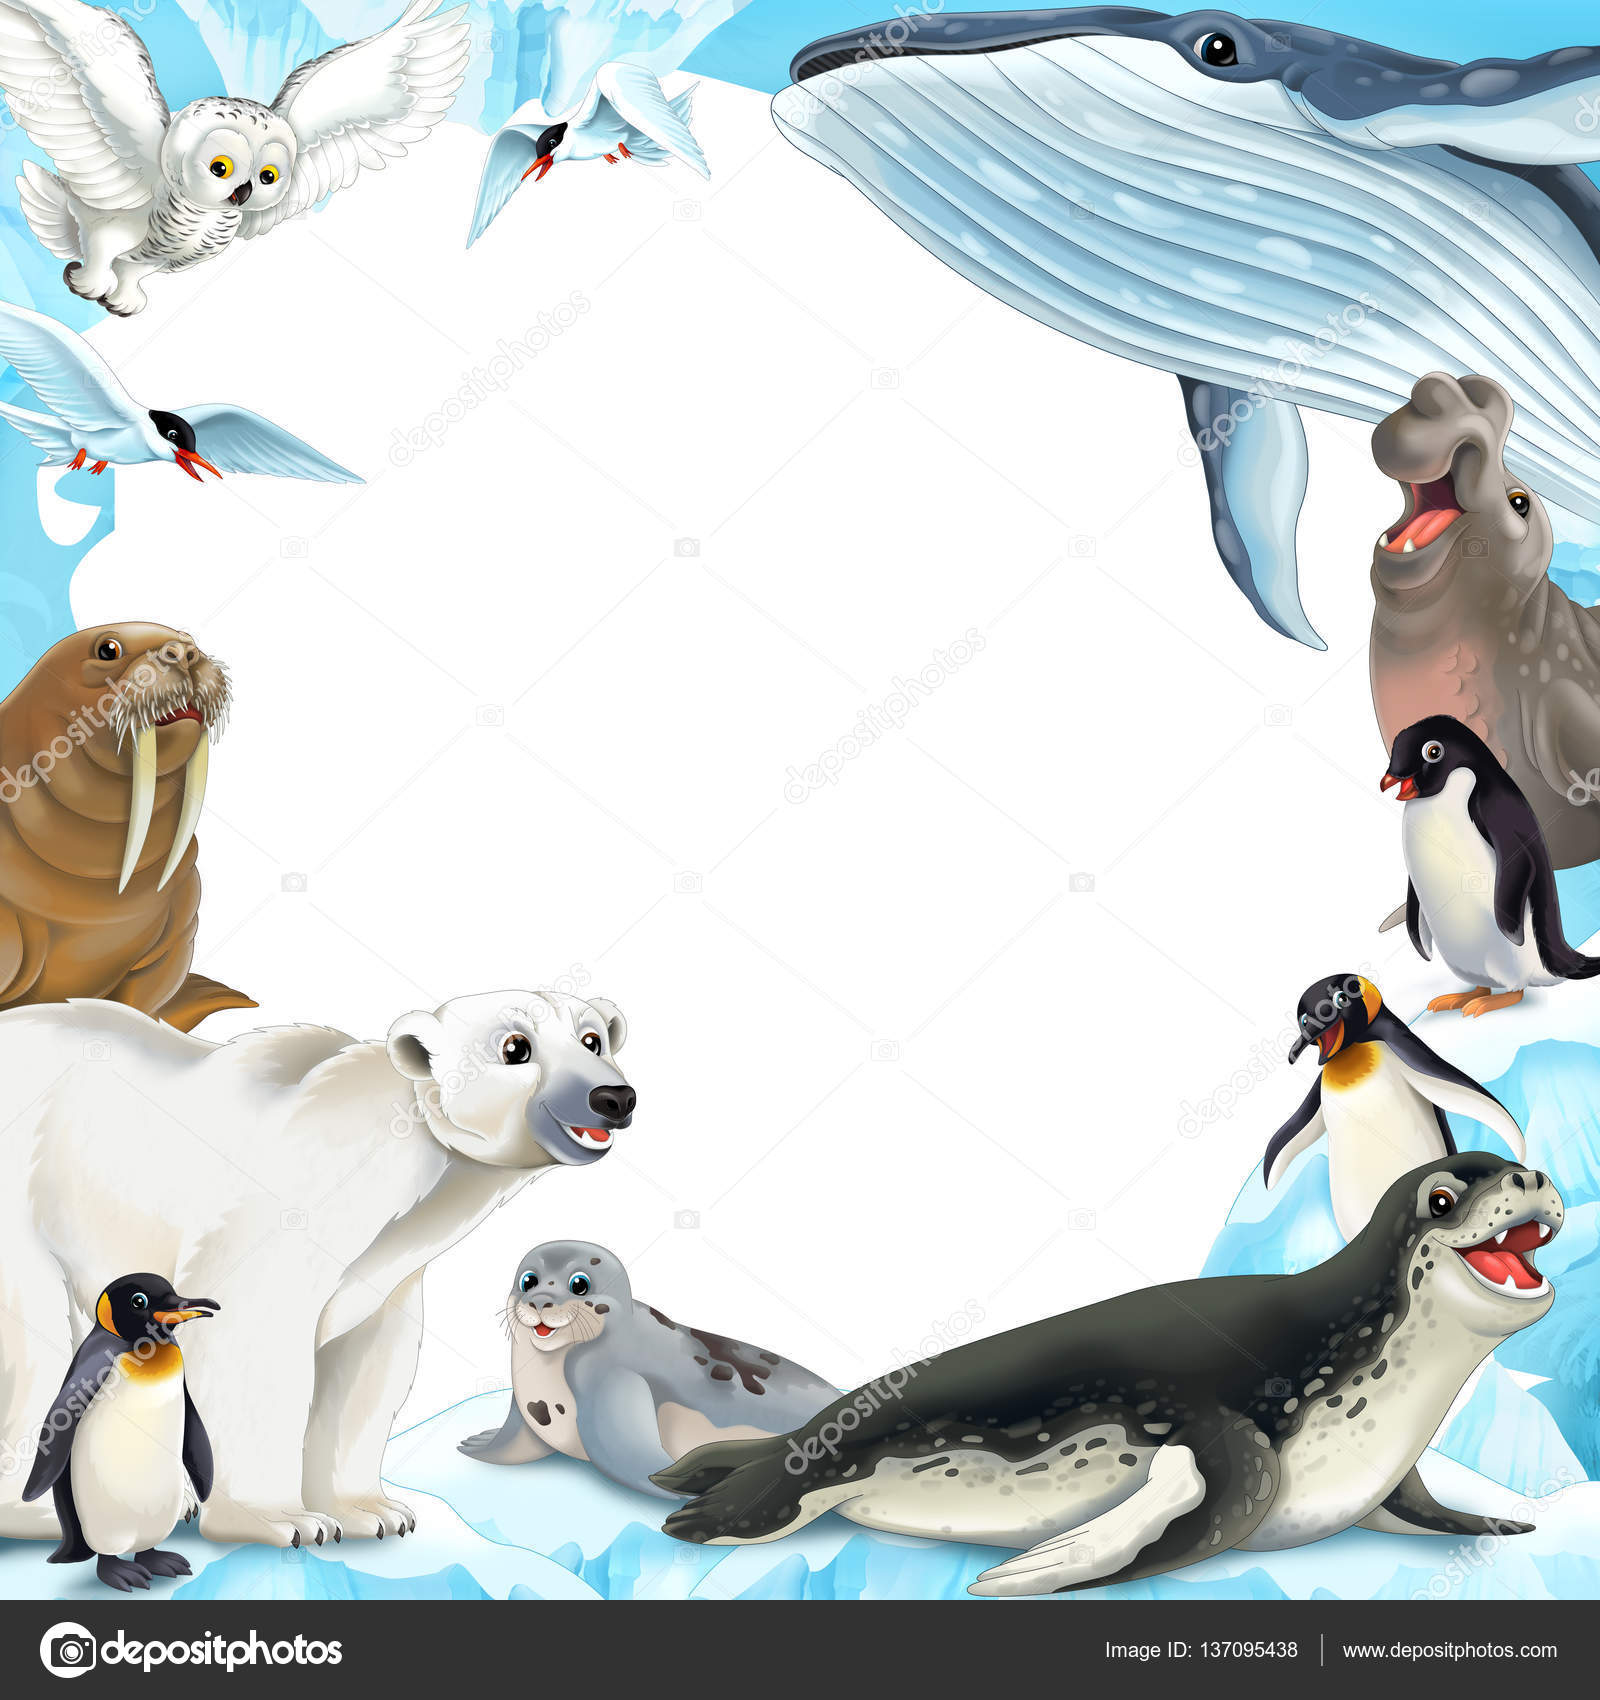 Животные Арктики Фото С Названиями